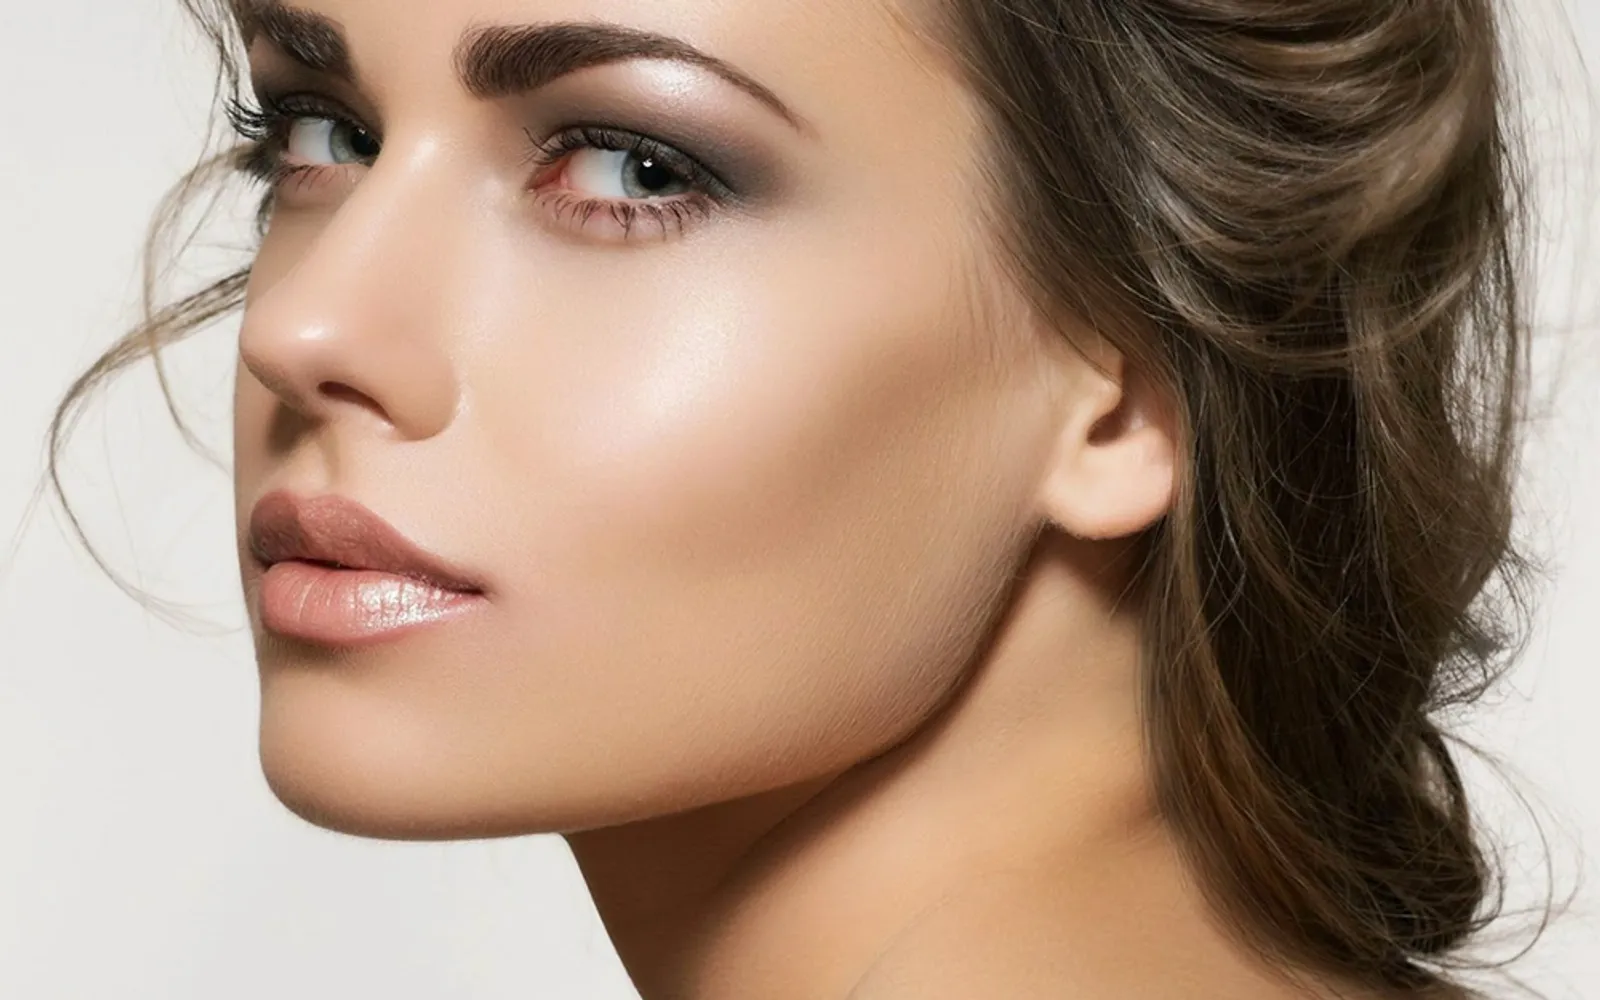 Ingin Terlihat Cantik Nggak Harus Full Makeup, Cukup Aplikasikan 7 Produk Ini 